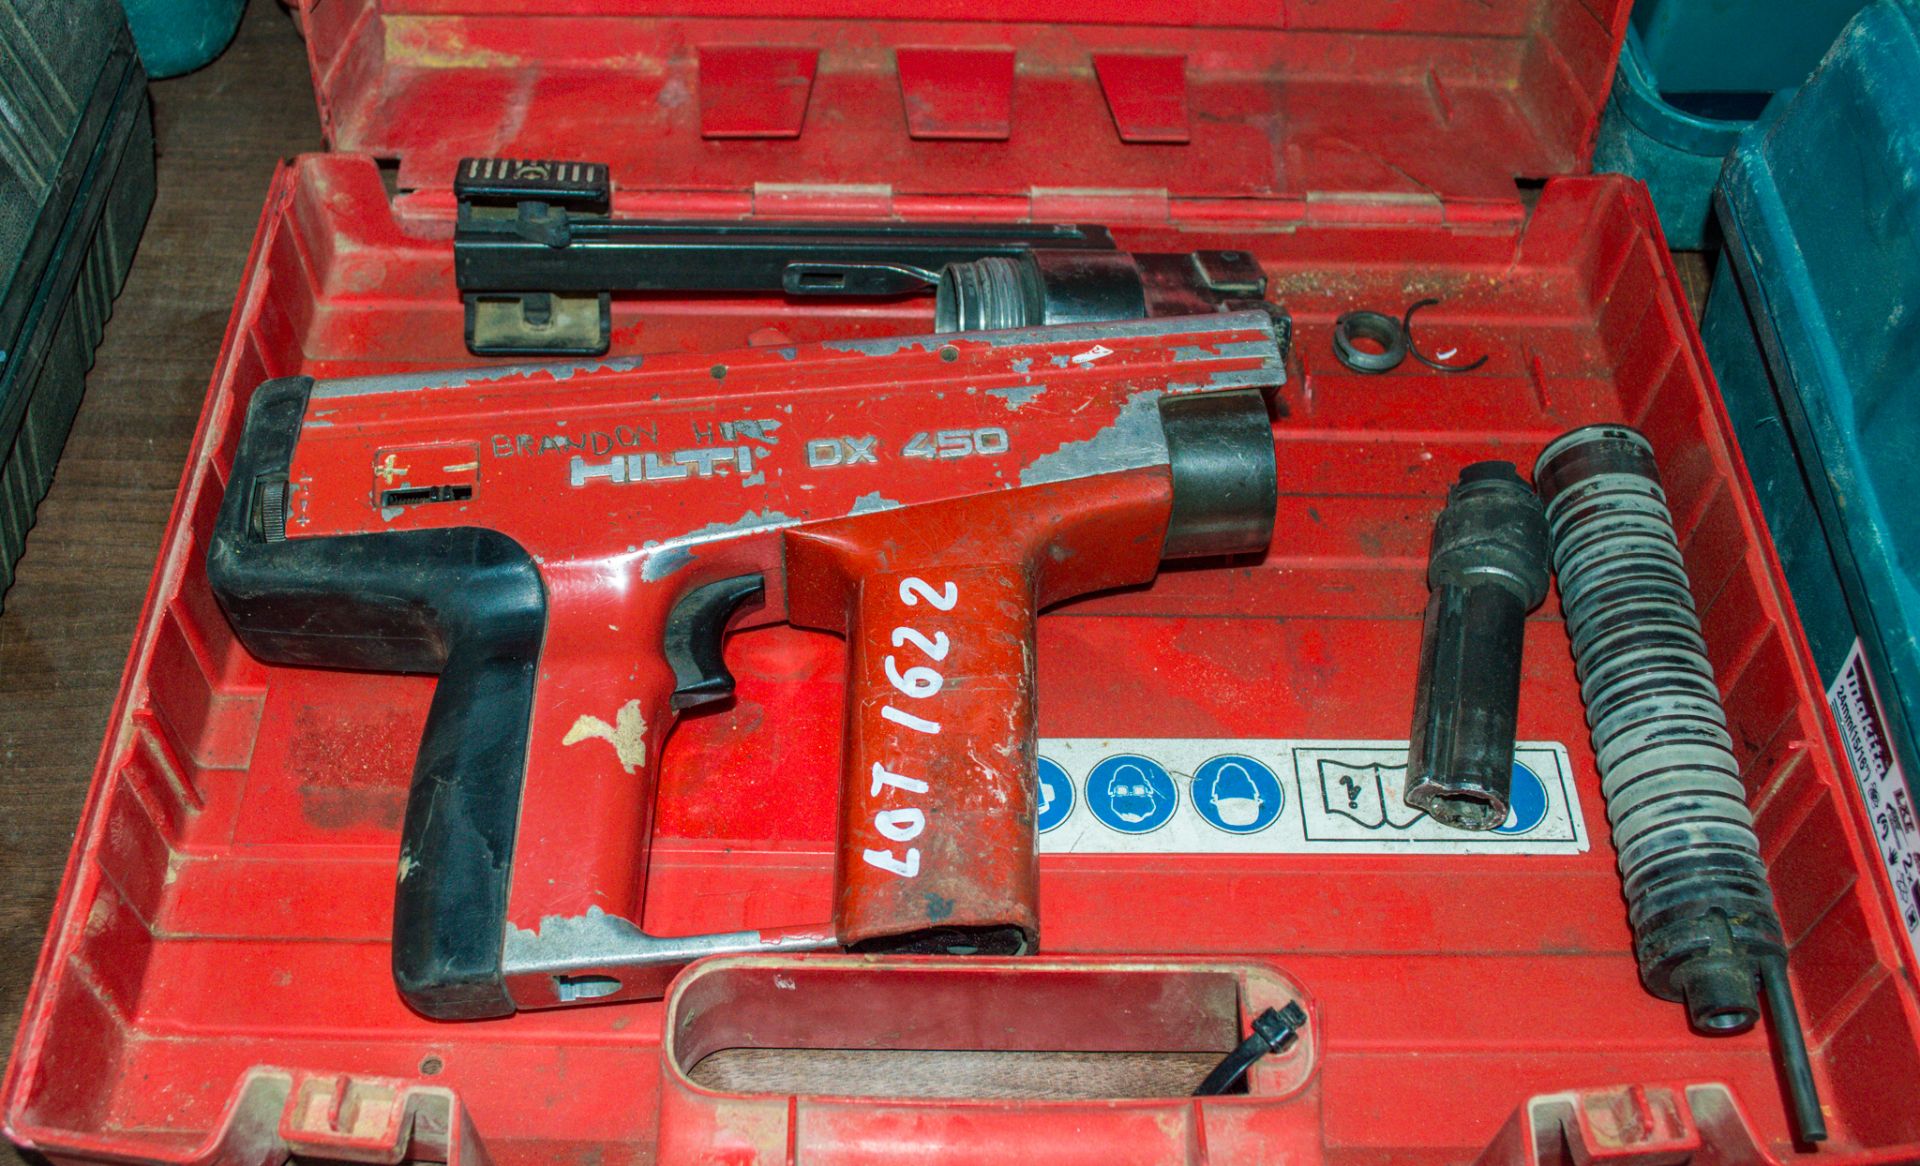 Hilti DX-450 cordless nail gun c/w carry case 04090342